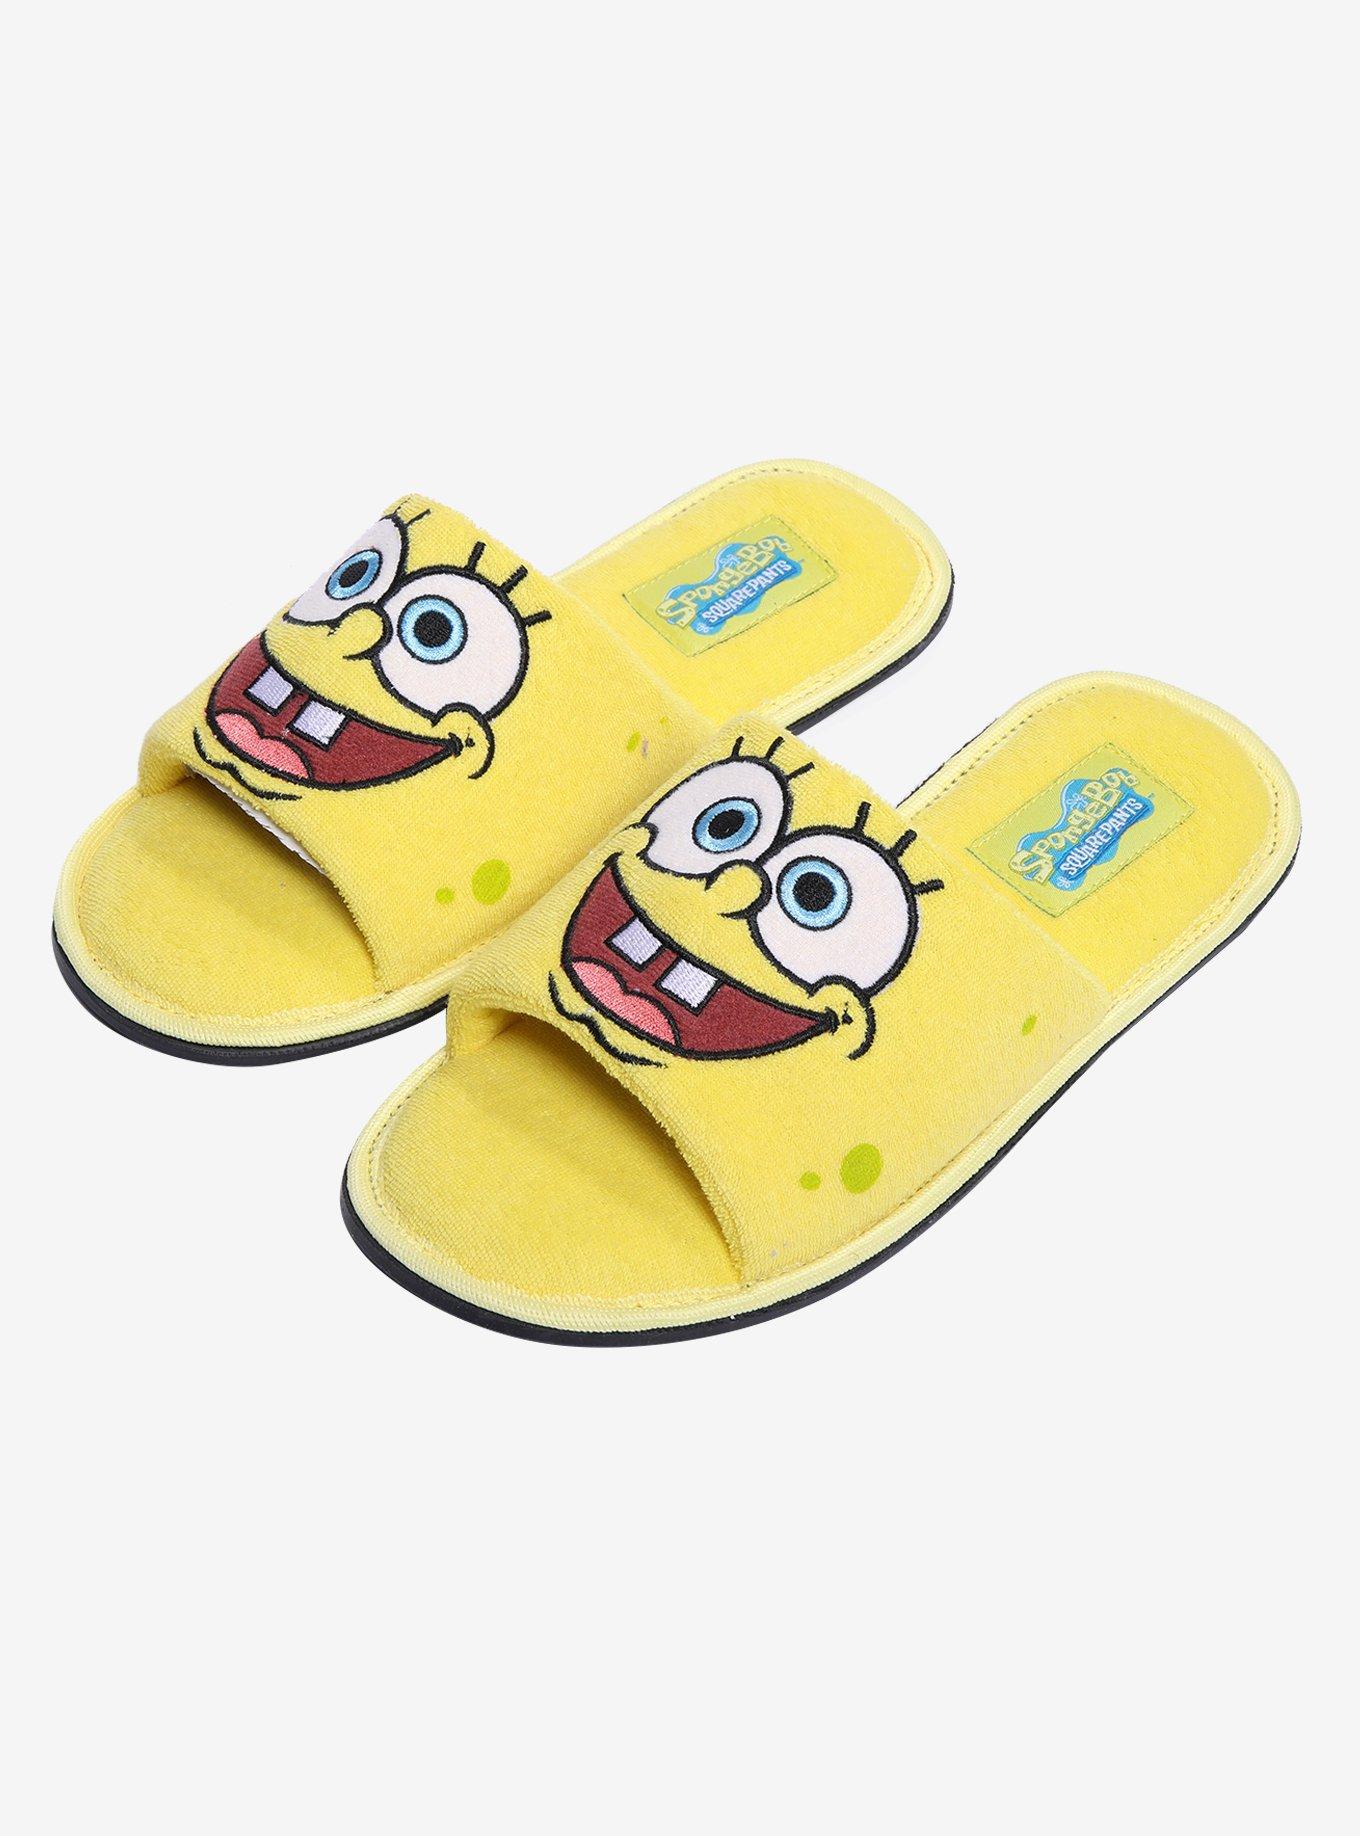 SpongeBob SquarePants Face Spa Slippers, MULTI, hi-res